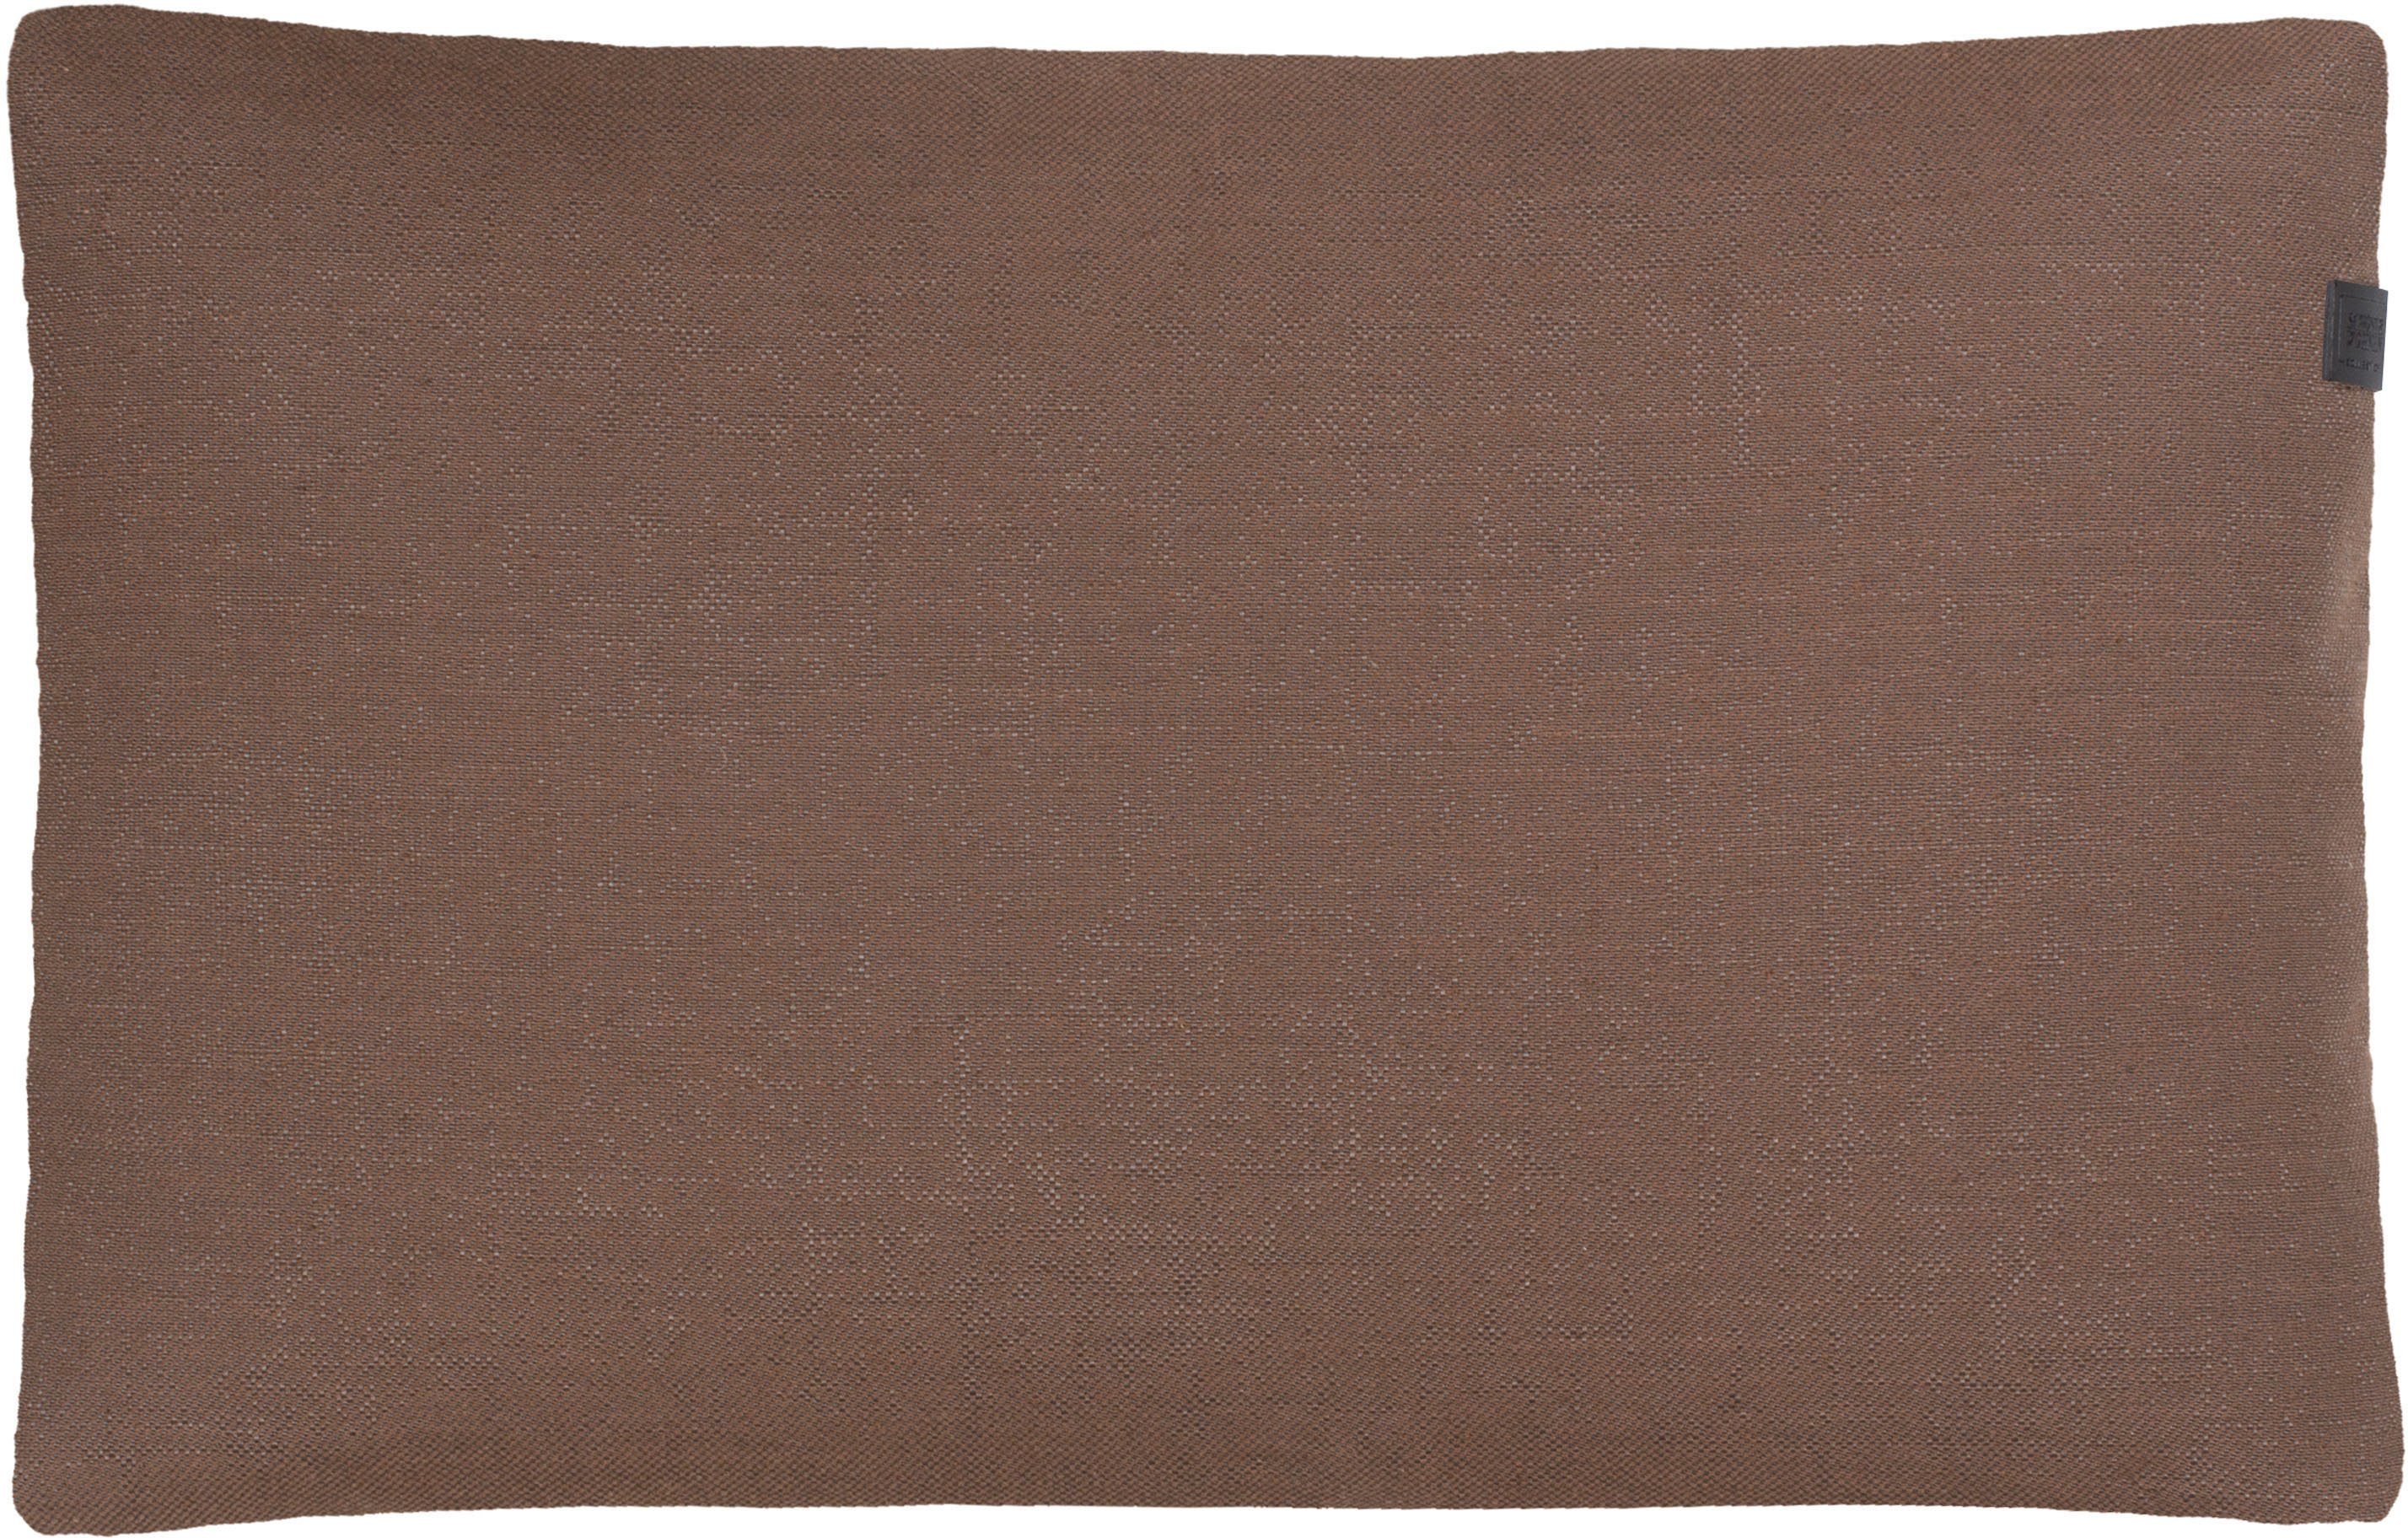 Kissenhülle Solo, SCHÖNER WOHNEN-Kollektion (1 Stück), 38x58 cm